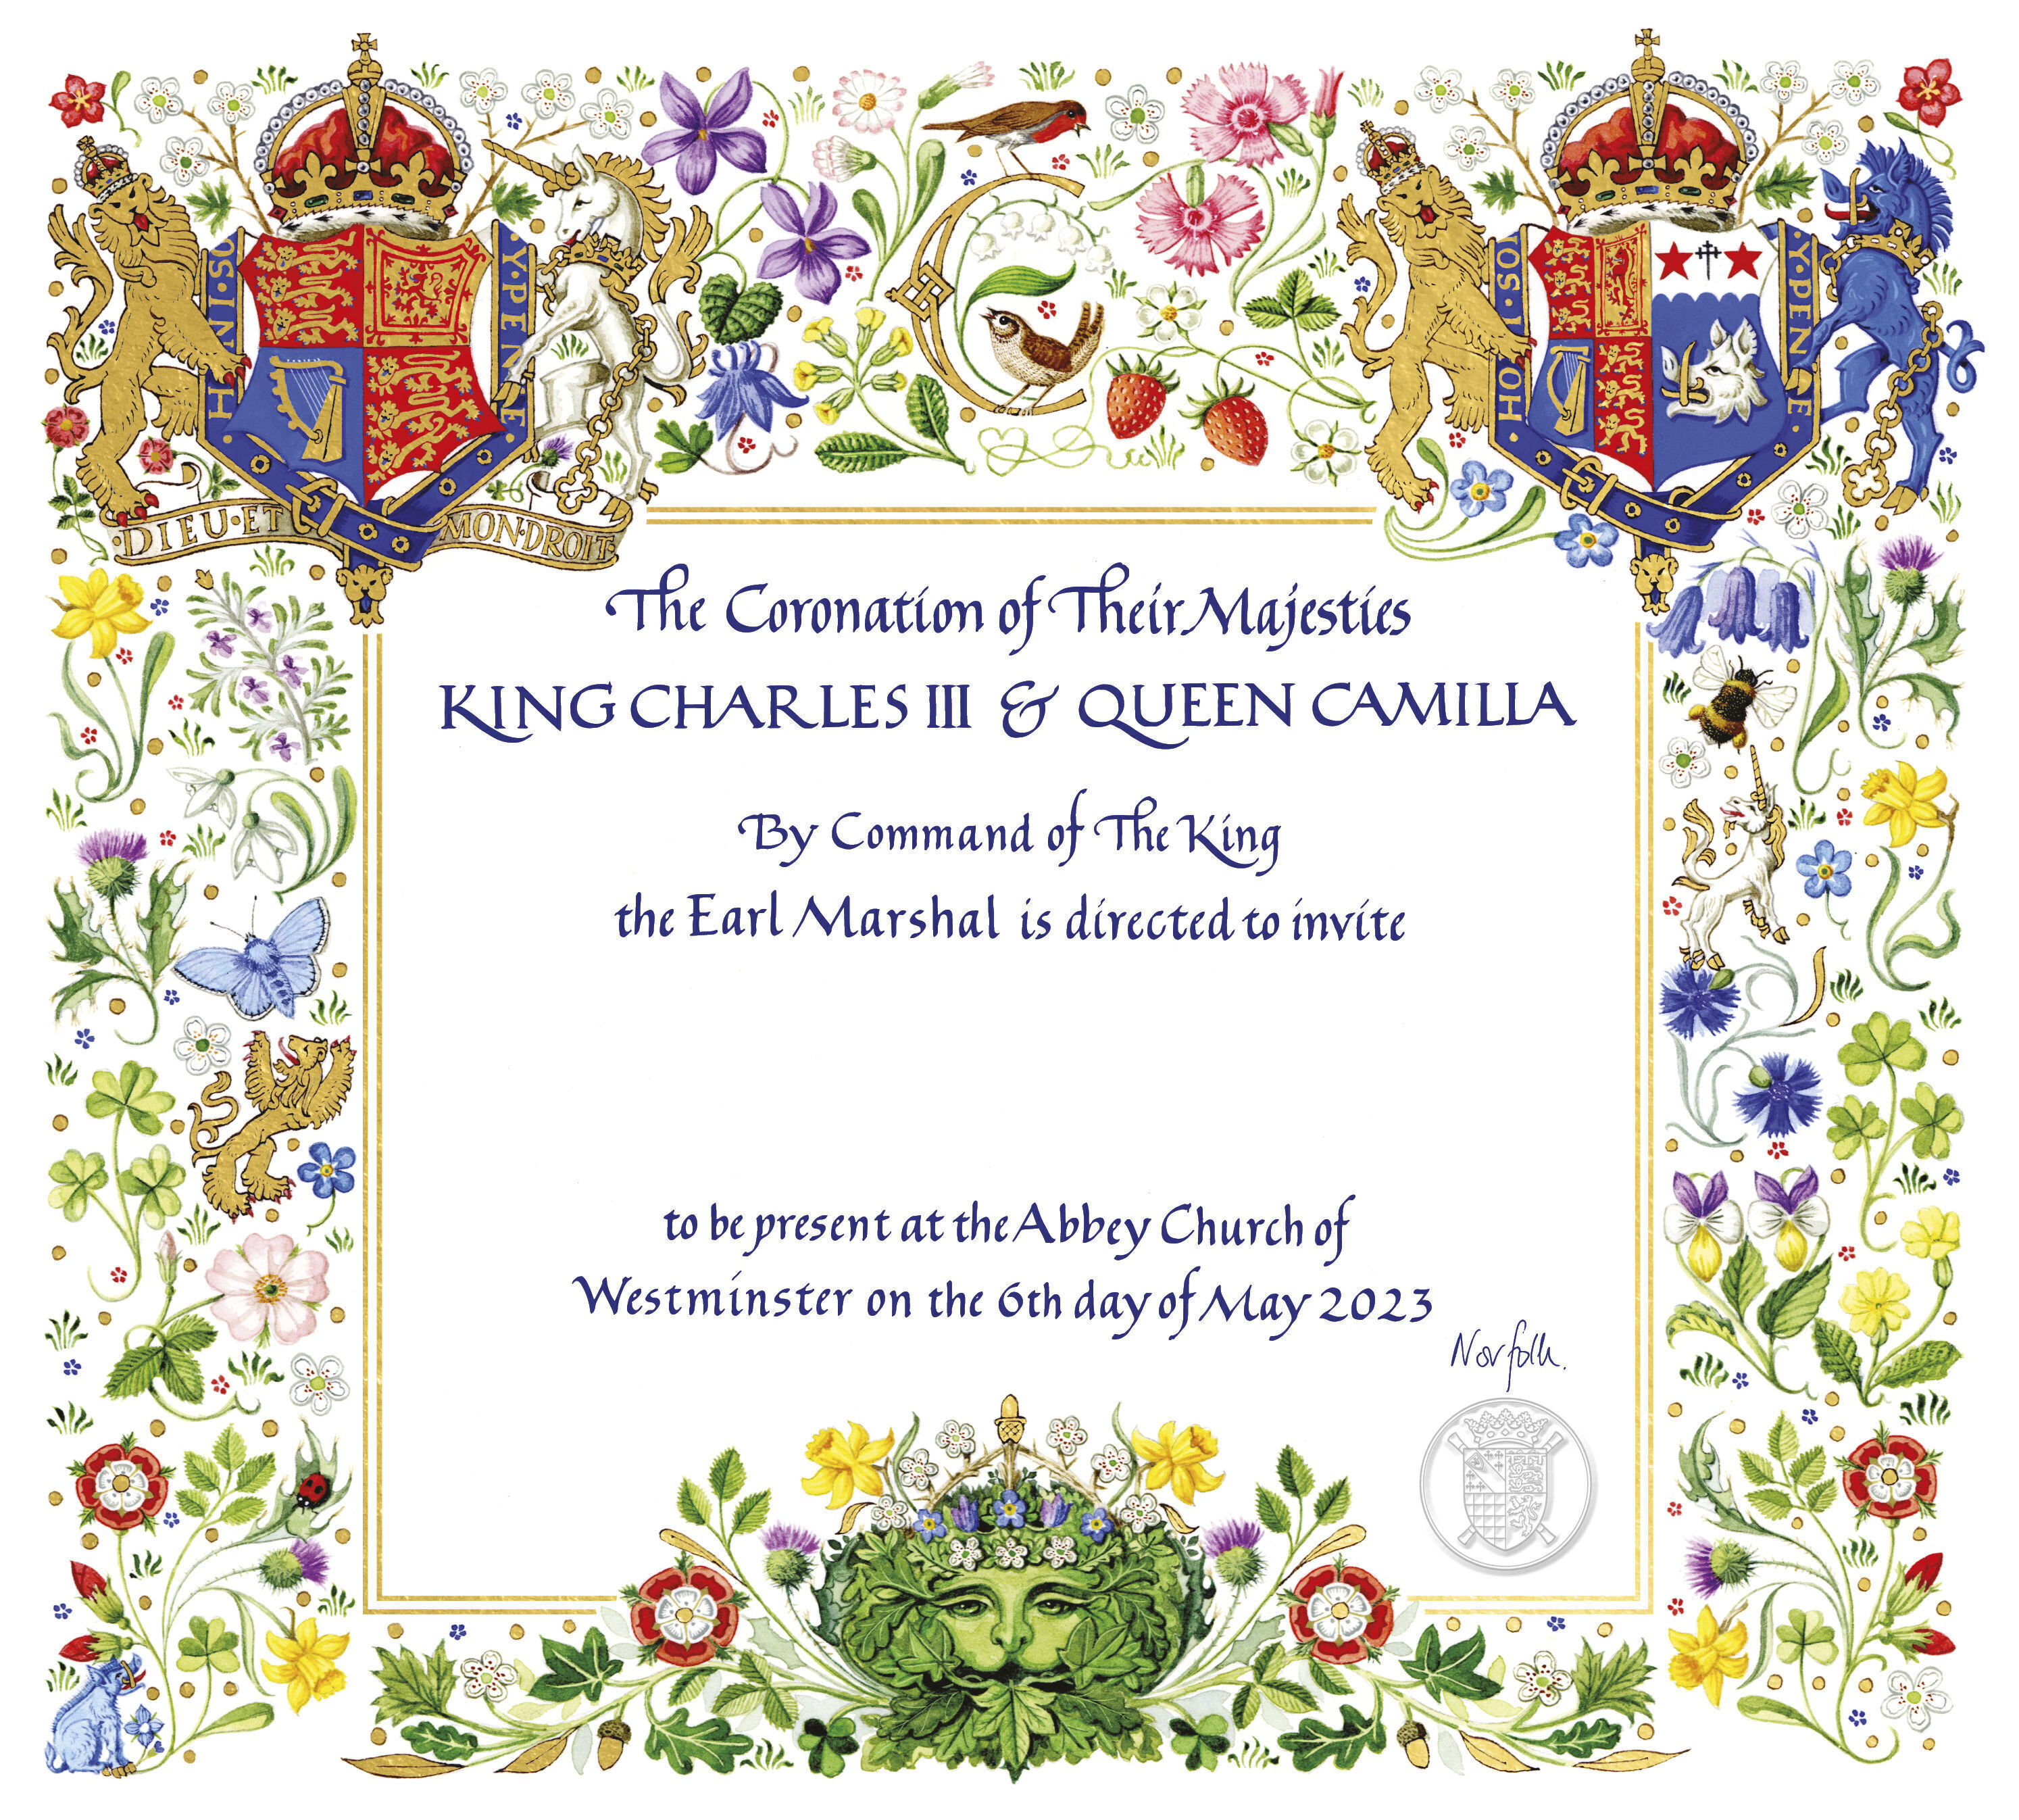 Esta fotografía publicada por el Palacio de Buckingham el martes 4 de abril de 2023 muestra la invitación a la coronación del rey Carlos III en la Abadía de Westminster. Omite la palabra 